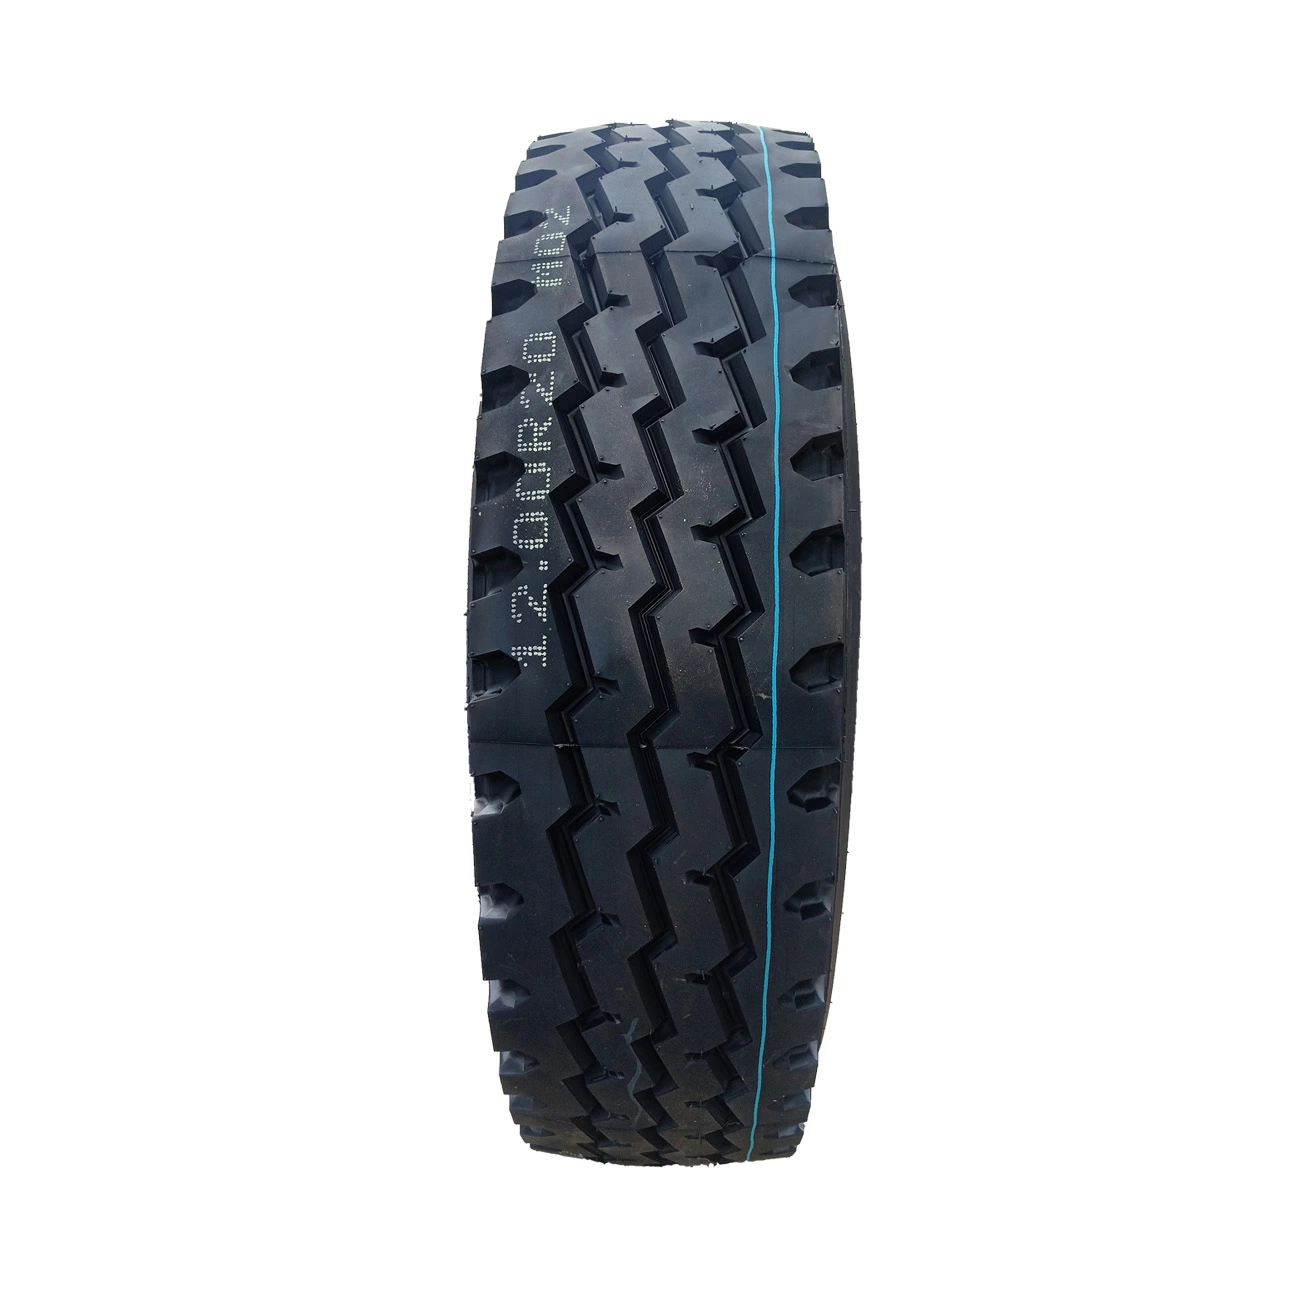 Nouvelle marque de pneu chinois Linkfun/Goodyear/l'avance/de haute qualité de pneus de camion Greendragon 12.00r20 pour Sudi saoudite